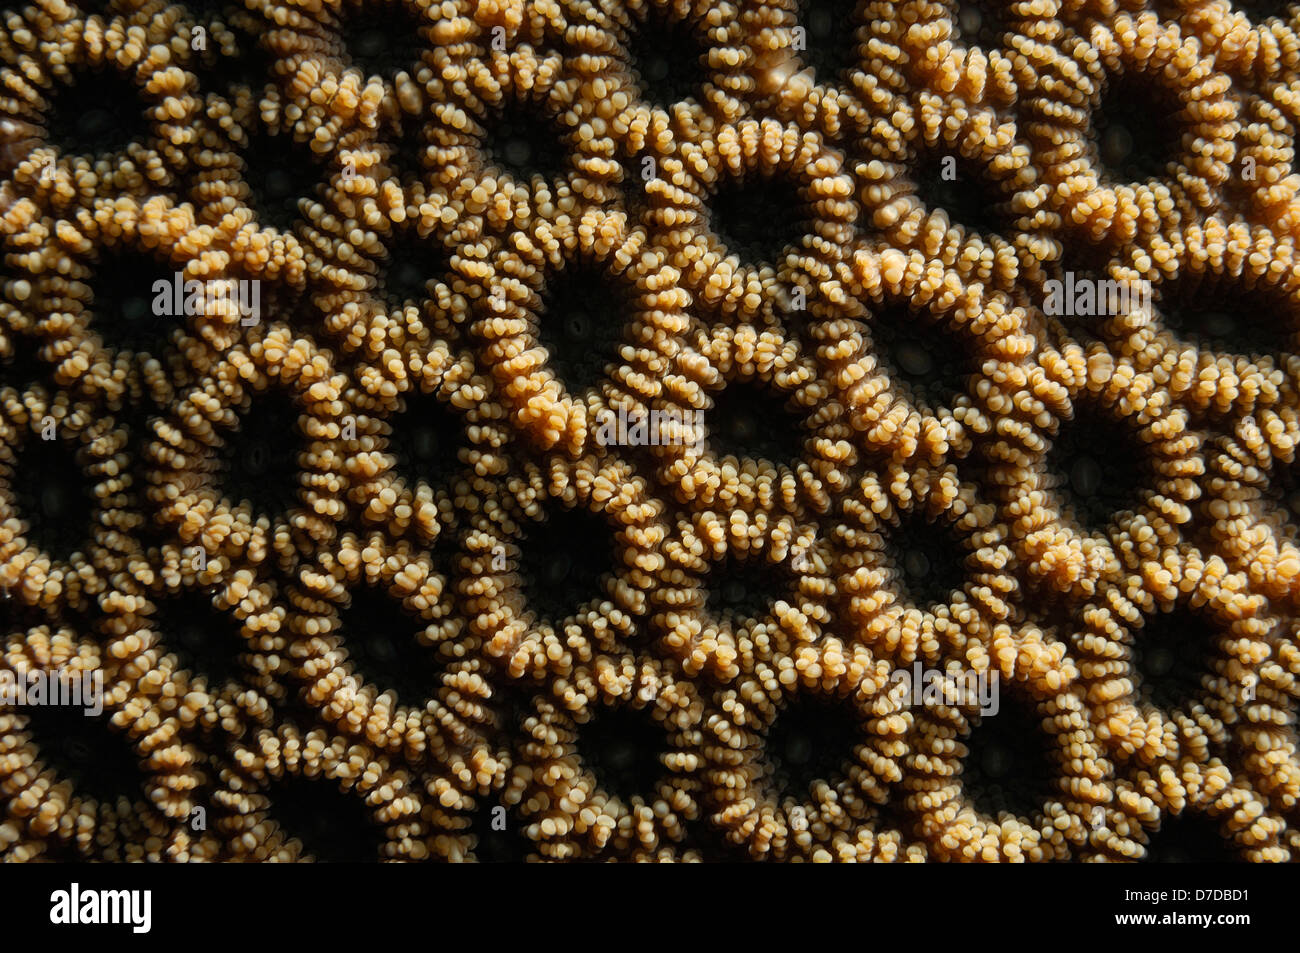 Polyps of Hard Coral, Favia, Alor Archipelago, Indonesia Stock Photo